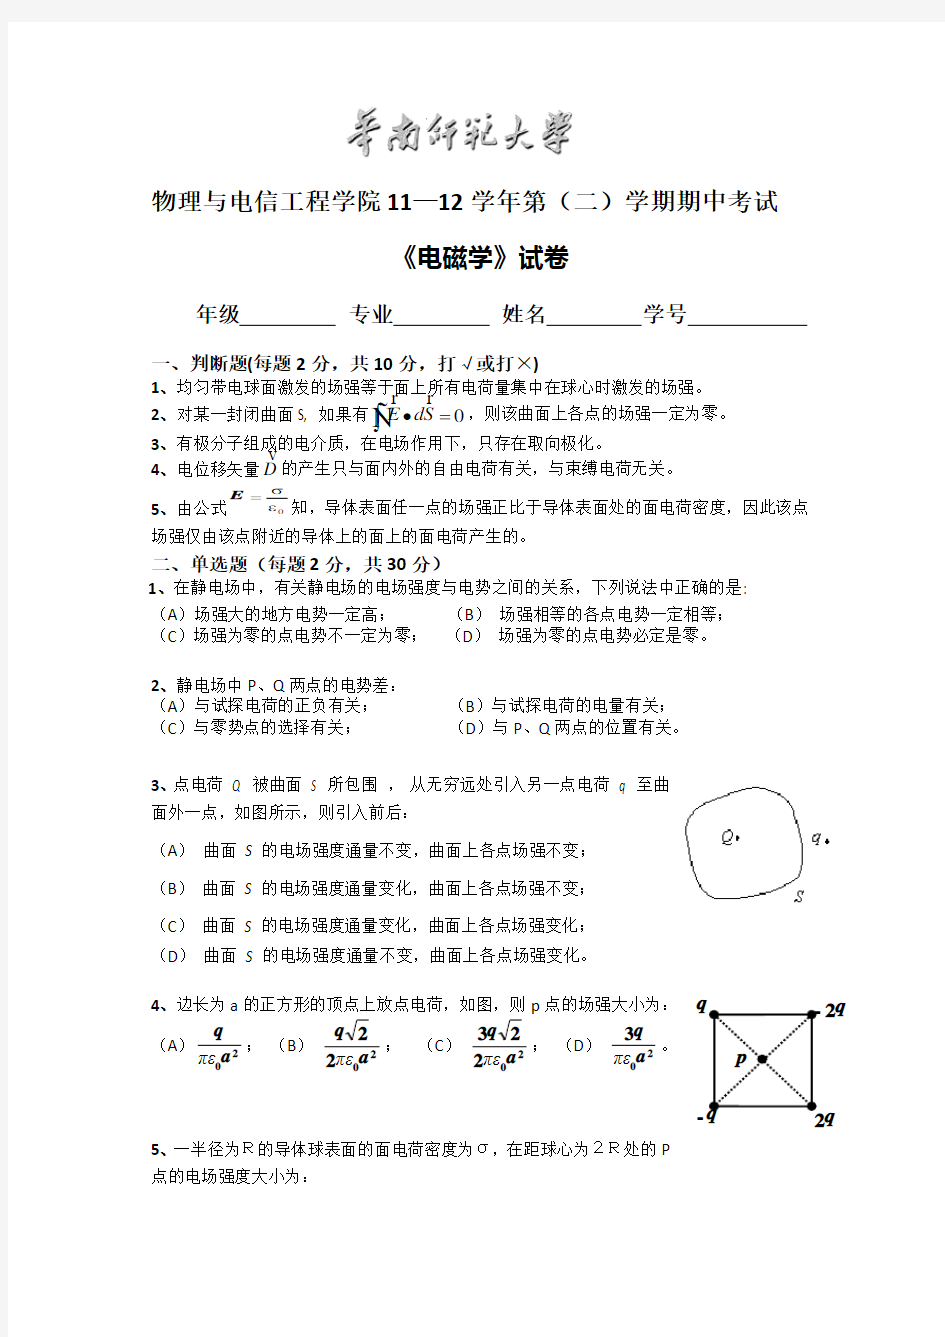 华南师范大学电磁学11级期中考试试卷(含答案)